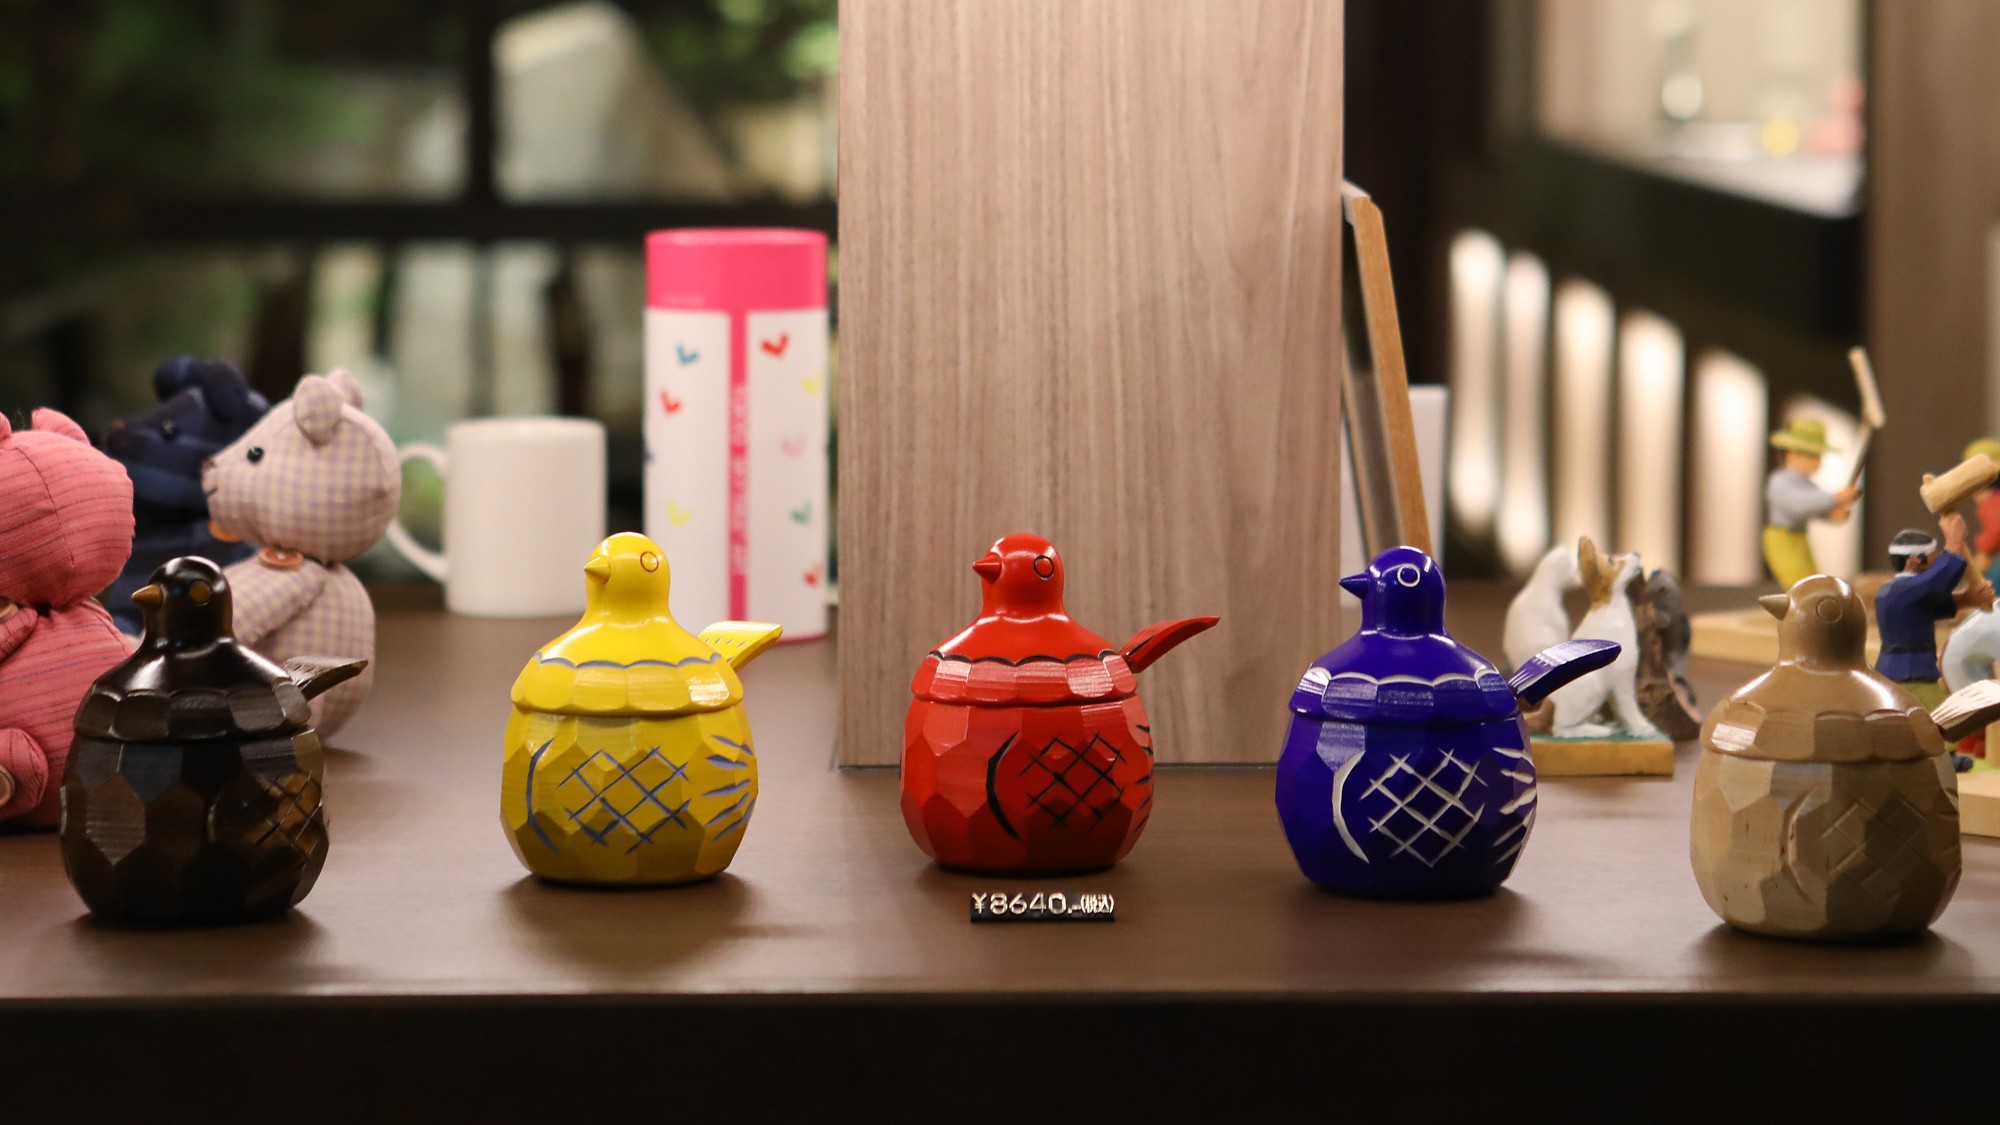  鳩の形をした砂糖壺と香合は、大正時代に上田で生まれた工芸品。愛らしい表情が人気です♪